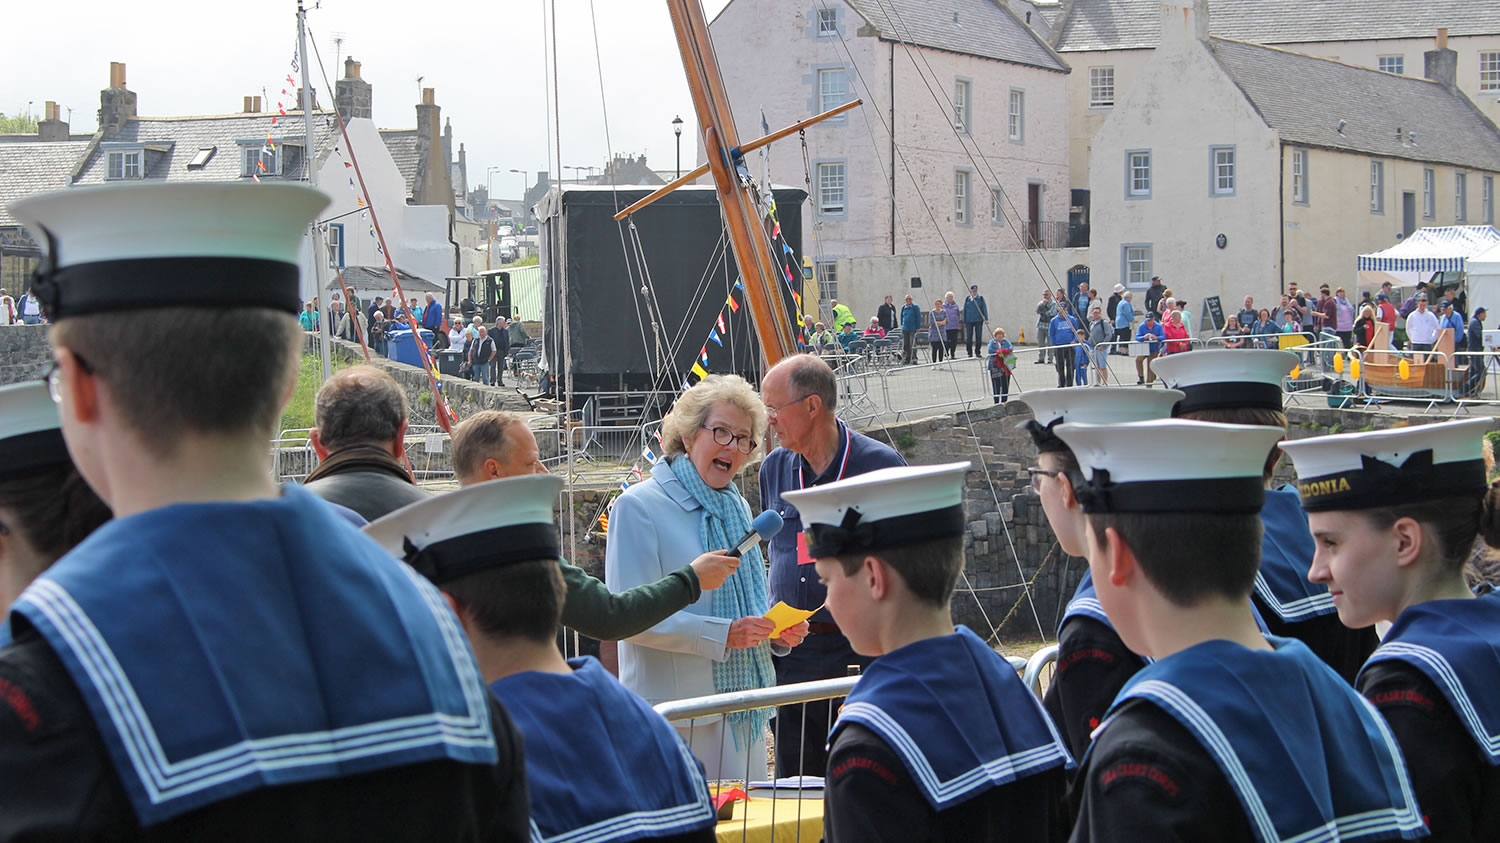 جشنواره قایق سنتی پورتسوی : نکات مهم برای شرکت در جشنواره قایق سنتی اسکاتلندی